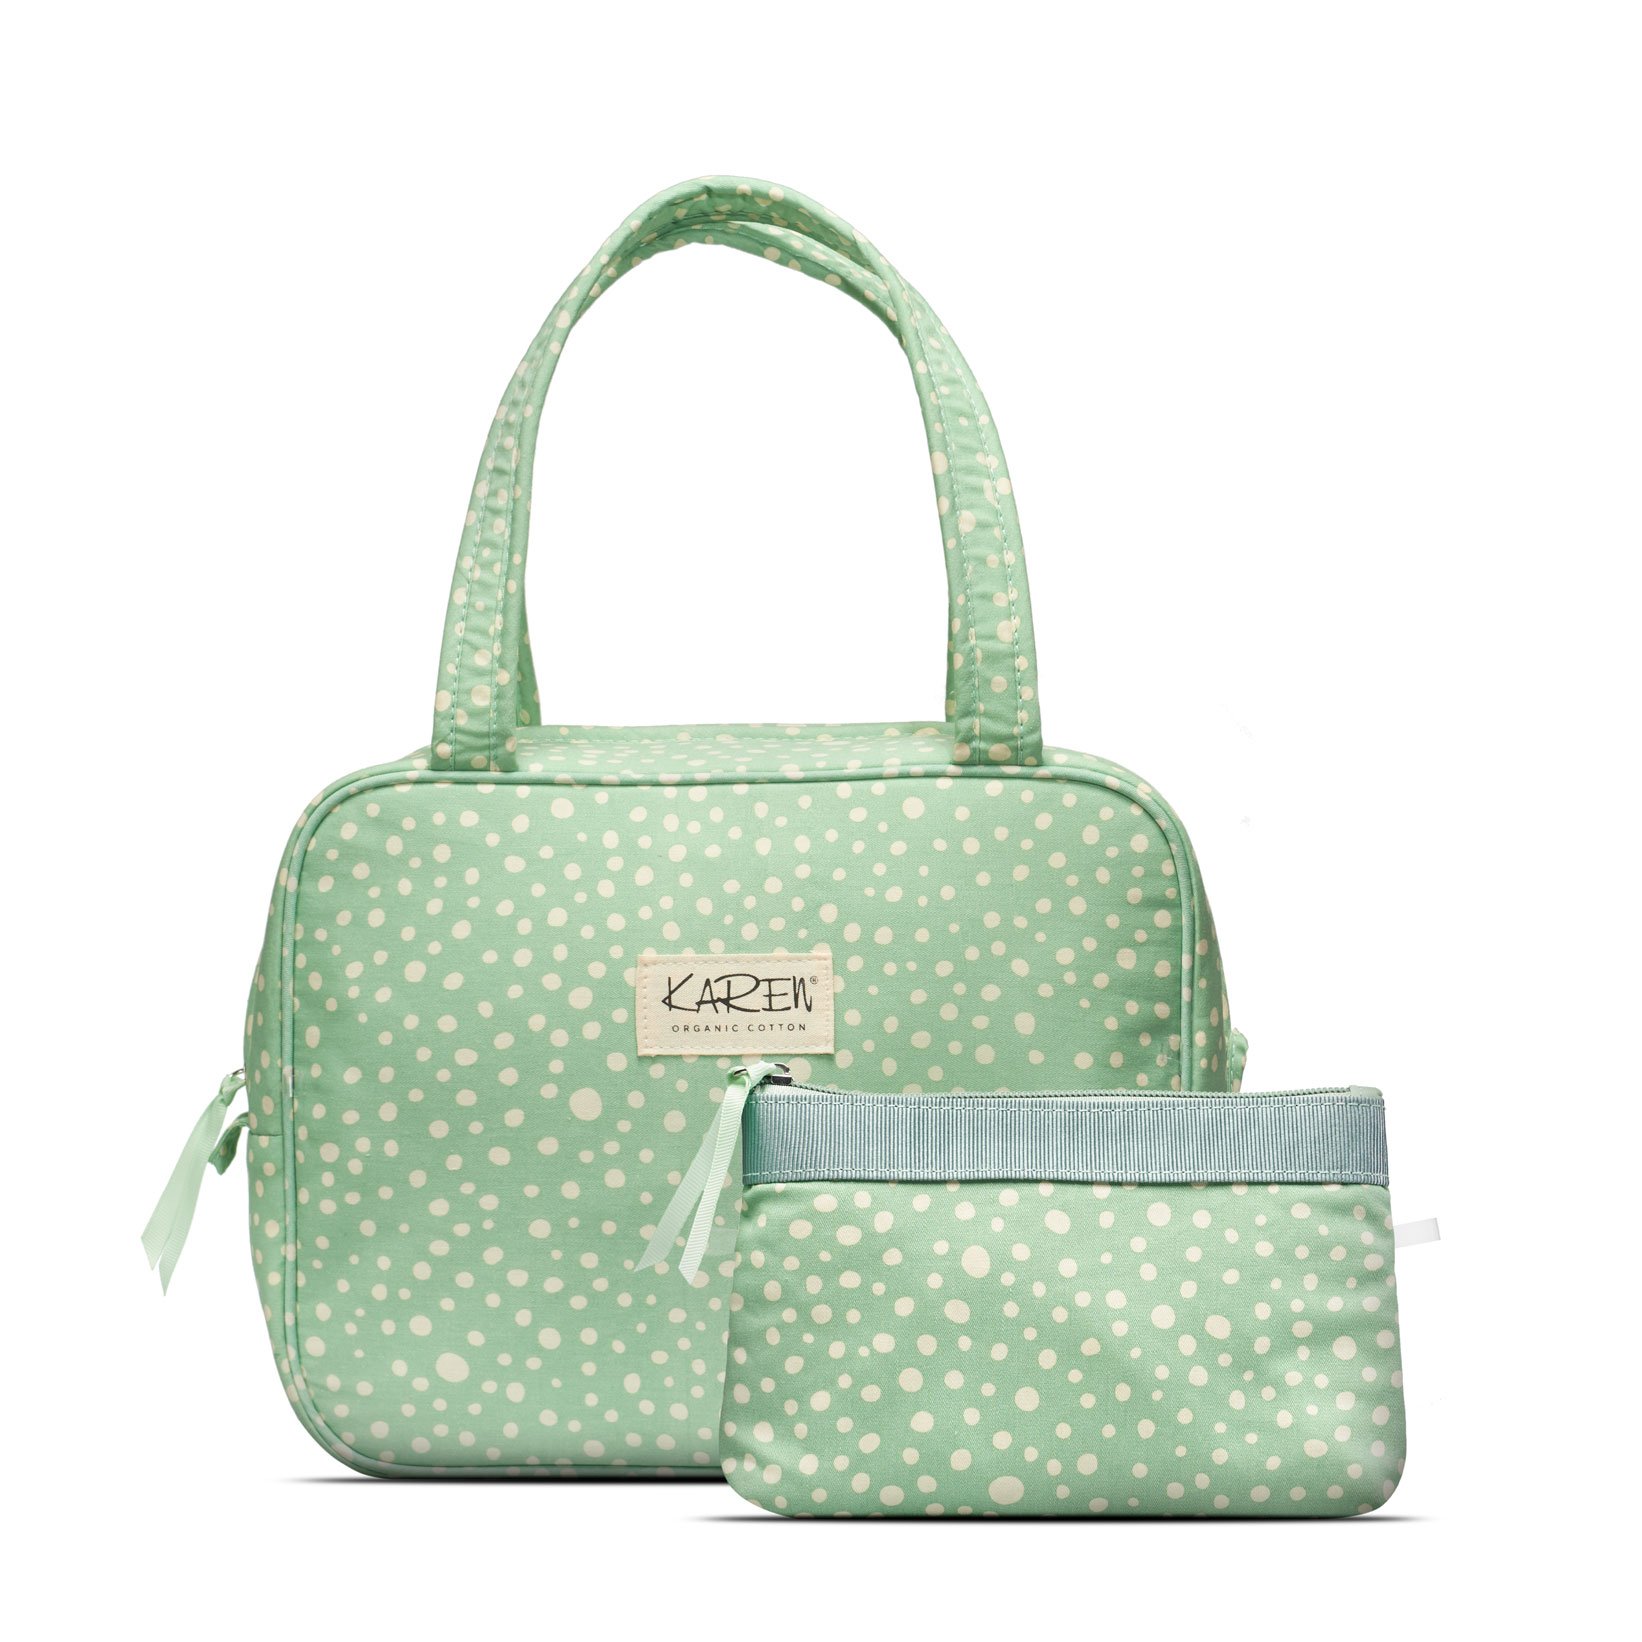 Karen Denmark - 2 pcs Cosmetic bag with handle Green/white print - Skjønnhet